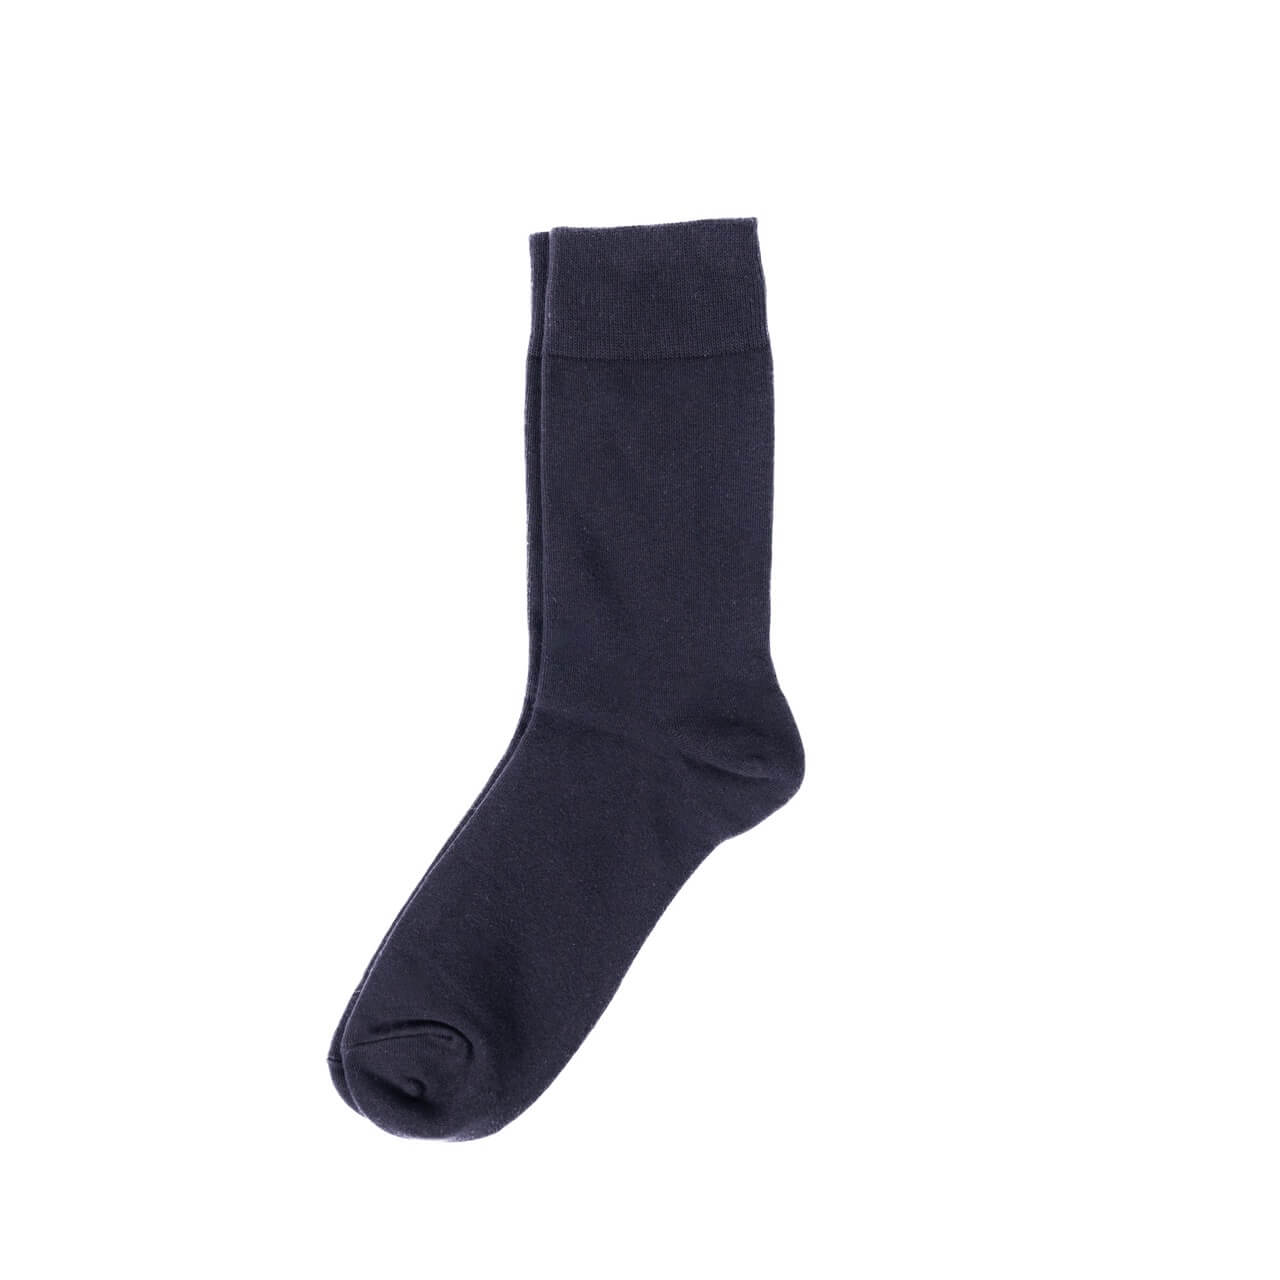 Classic Black Dress Socks